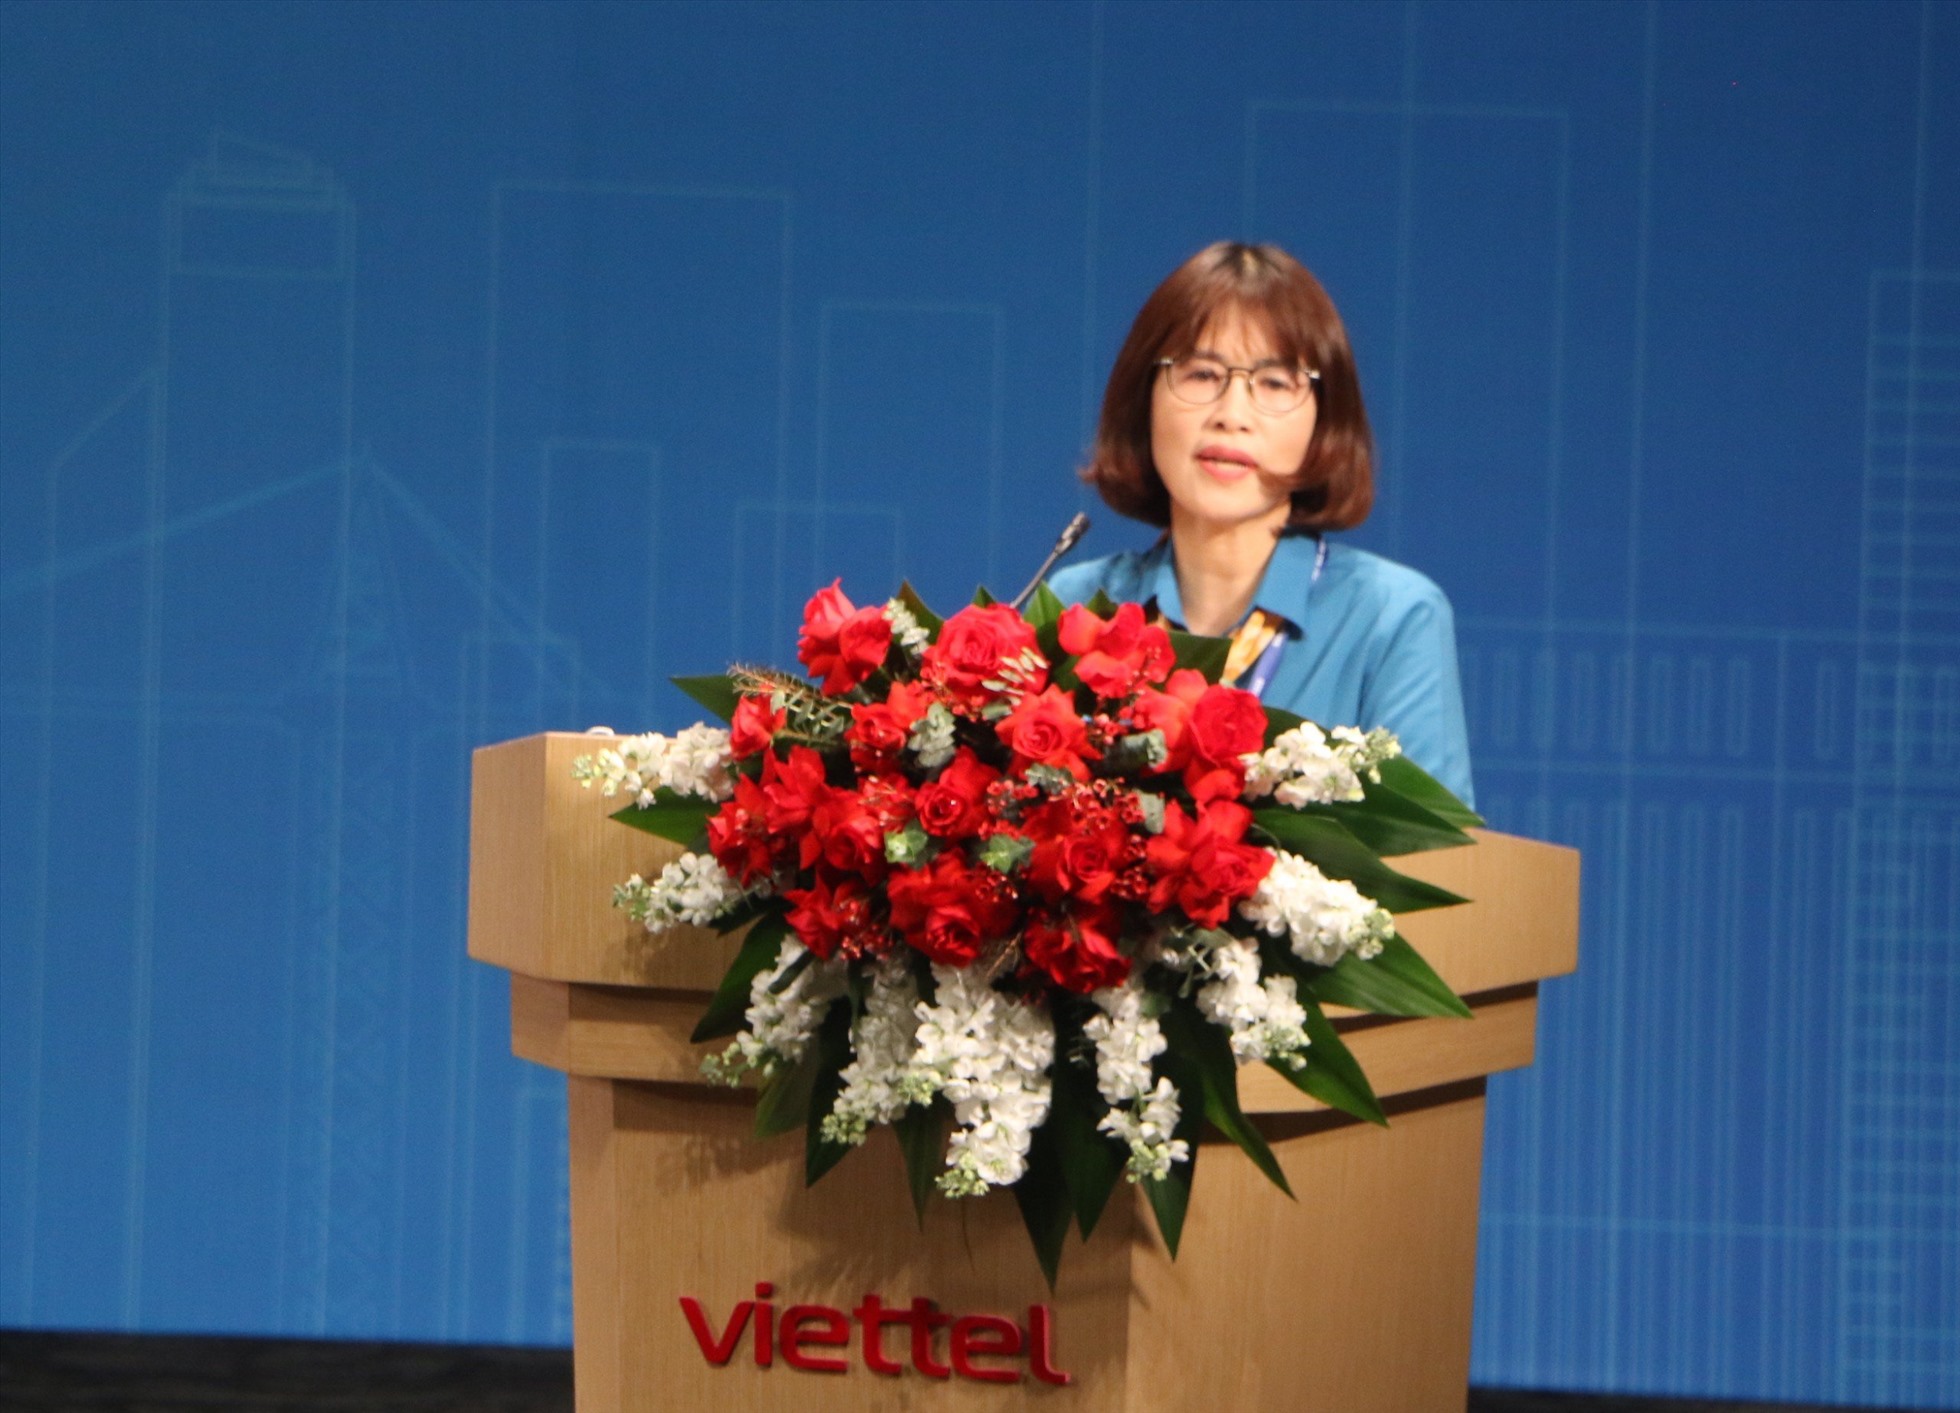 Thượng tá Nghiêm Thị Minh Tâm, Chủ tịch Công đoàn Tập đoàn Viettel phát biểu tham luận tại Diễn đàn 2. Ảnh: Hà Anh